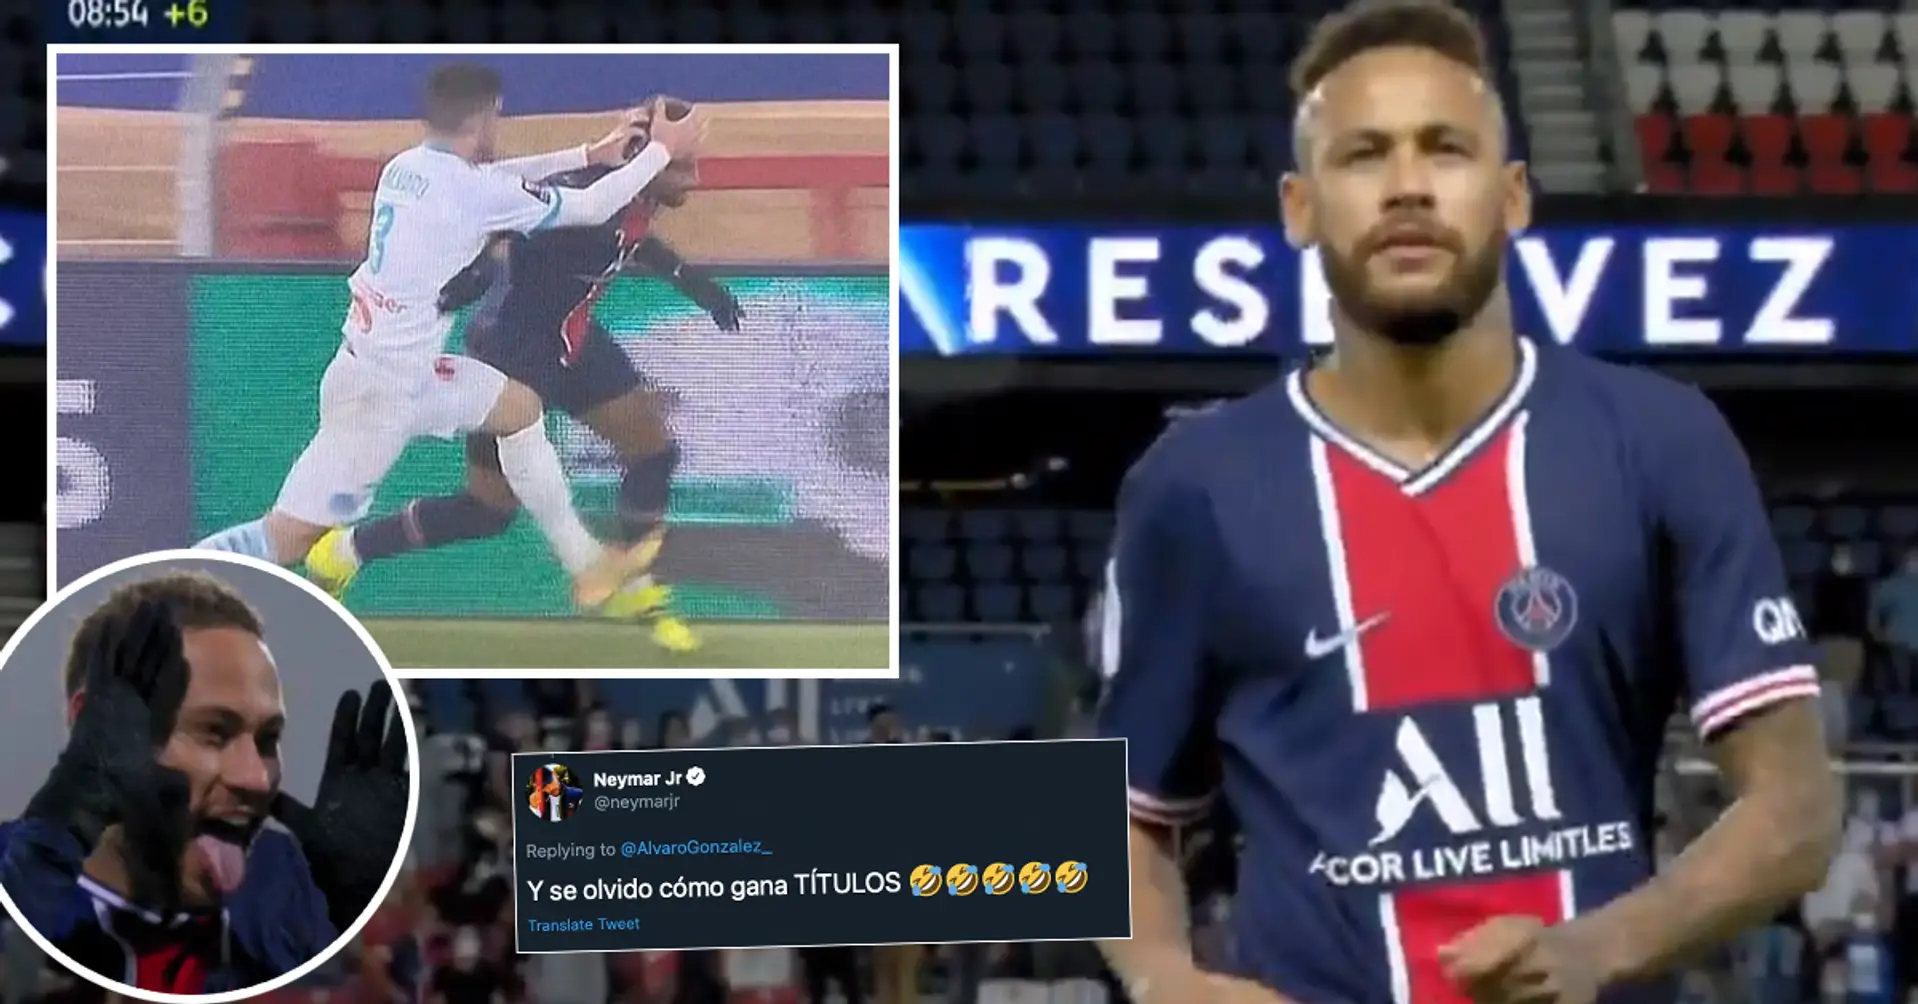 "Eltern haben mir beigebracht, wie man den Müll rausbringt". Alvaro Gonzalez von Marseille beleidigt Neymar auf Twitter